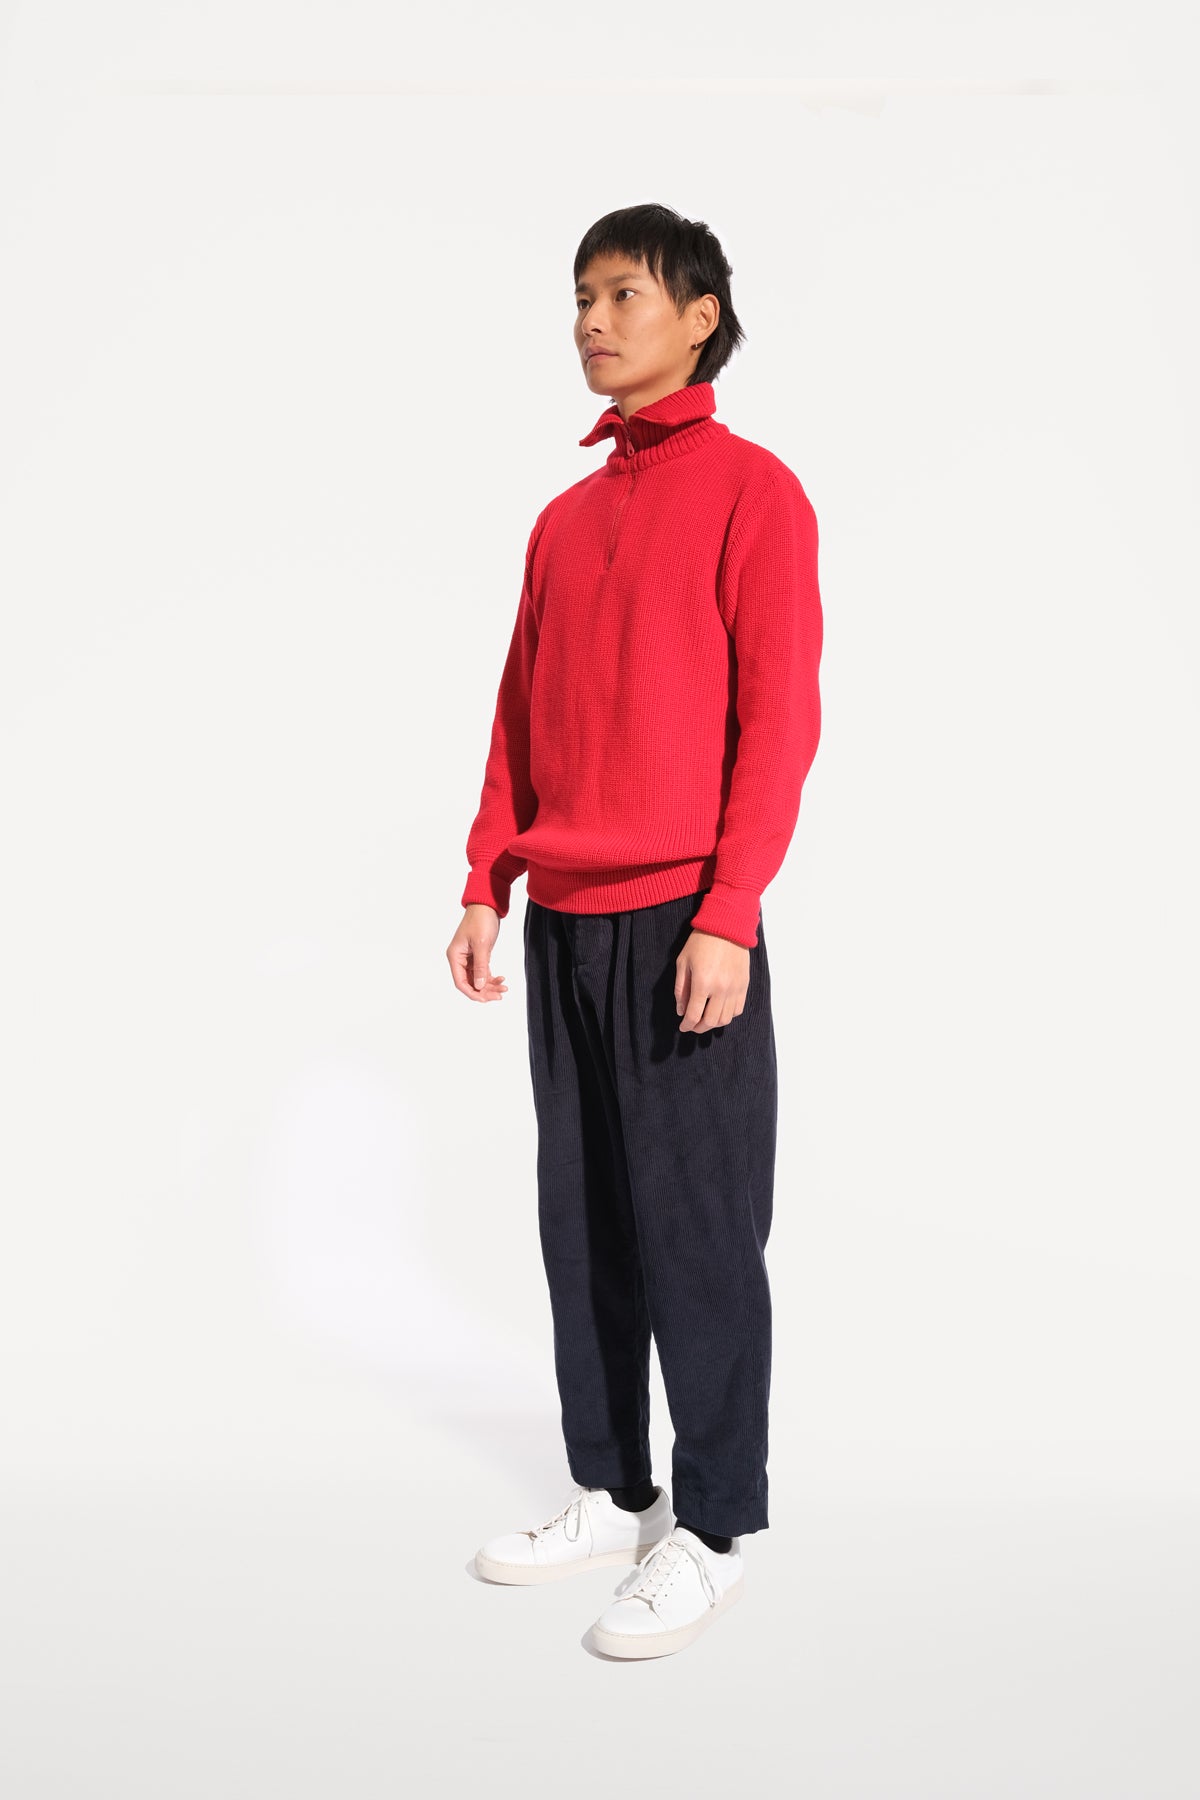 oftt - 04 - half-zip heavy knit  jumper - red - merino wool - image 1